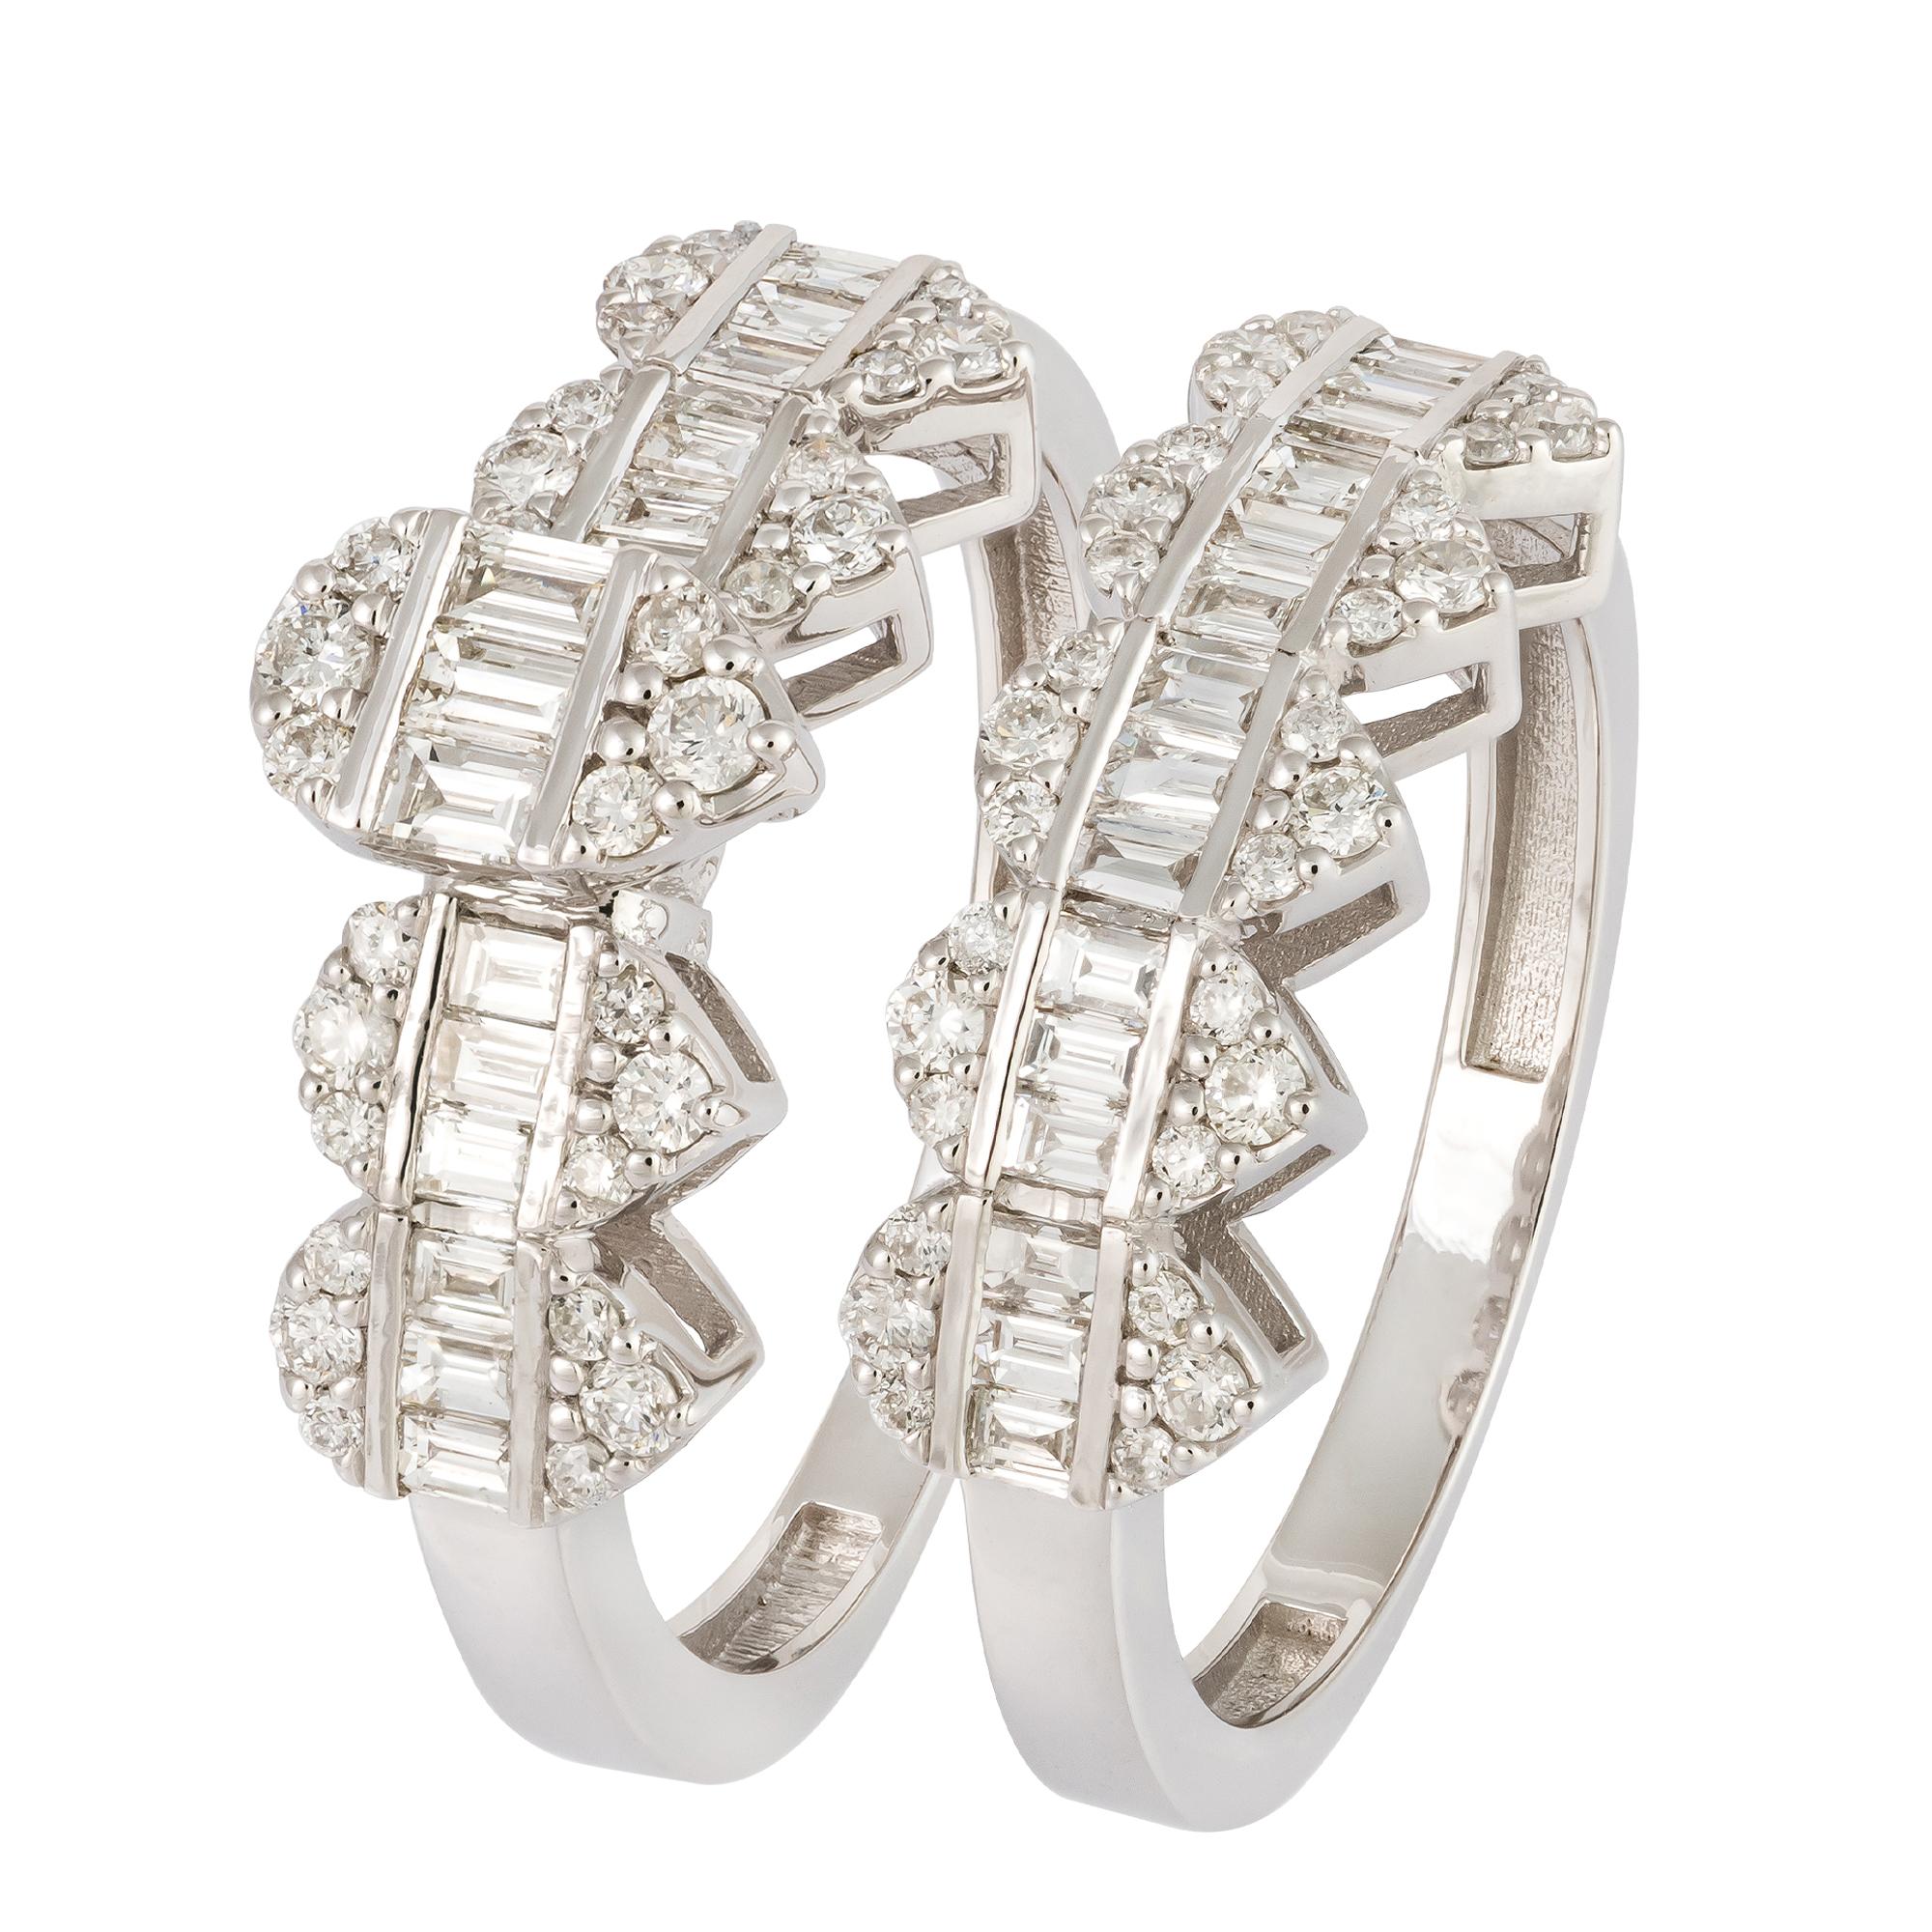 For Sale:  Stunning White 18K Gold White Diamond Ring For Her 2